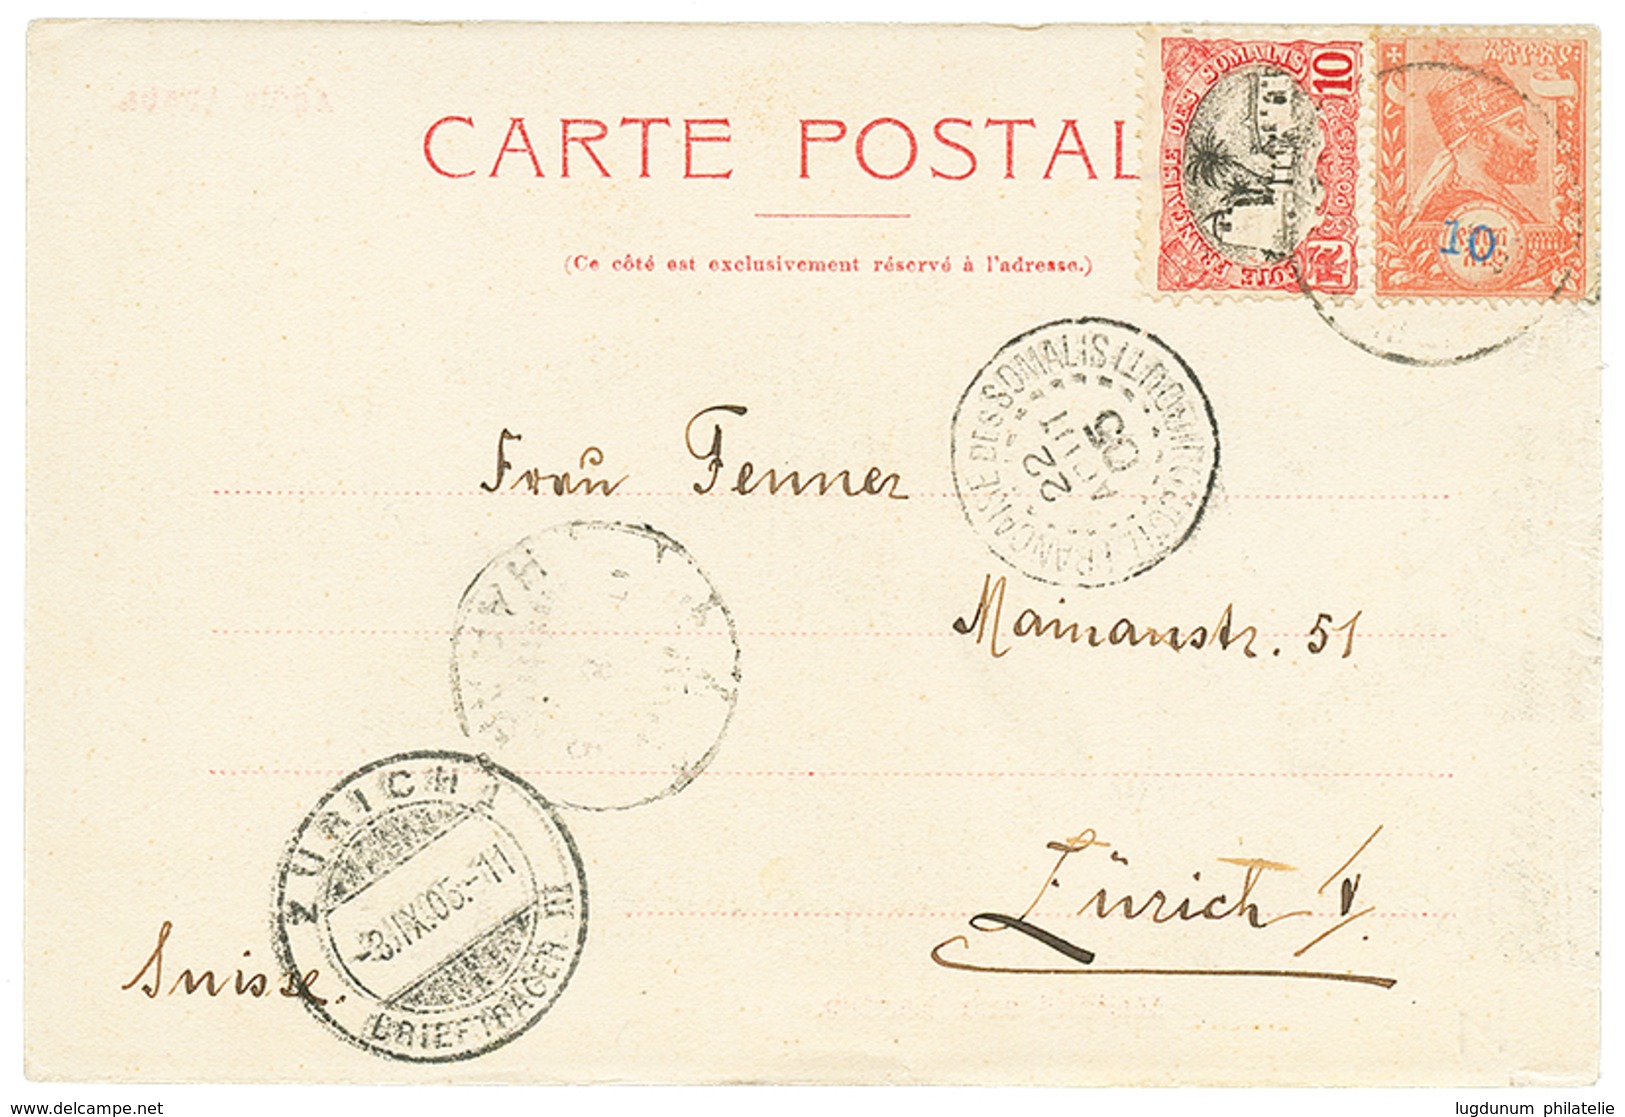 1384 1905 ETHIOPIA 10 On 1/2g + SOMALI COAST 10c Canc. HARRAR On Card Via DJIBOUTI To SWITZERLAND. Vf. - Ethiopia